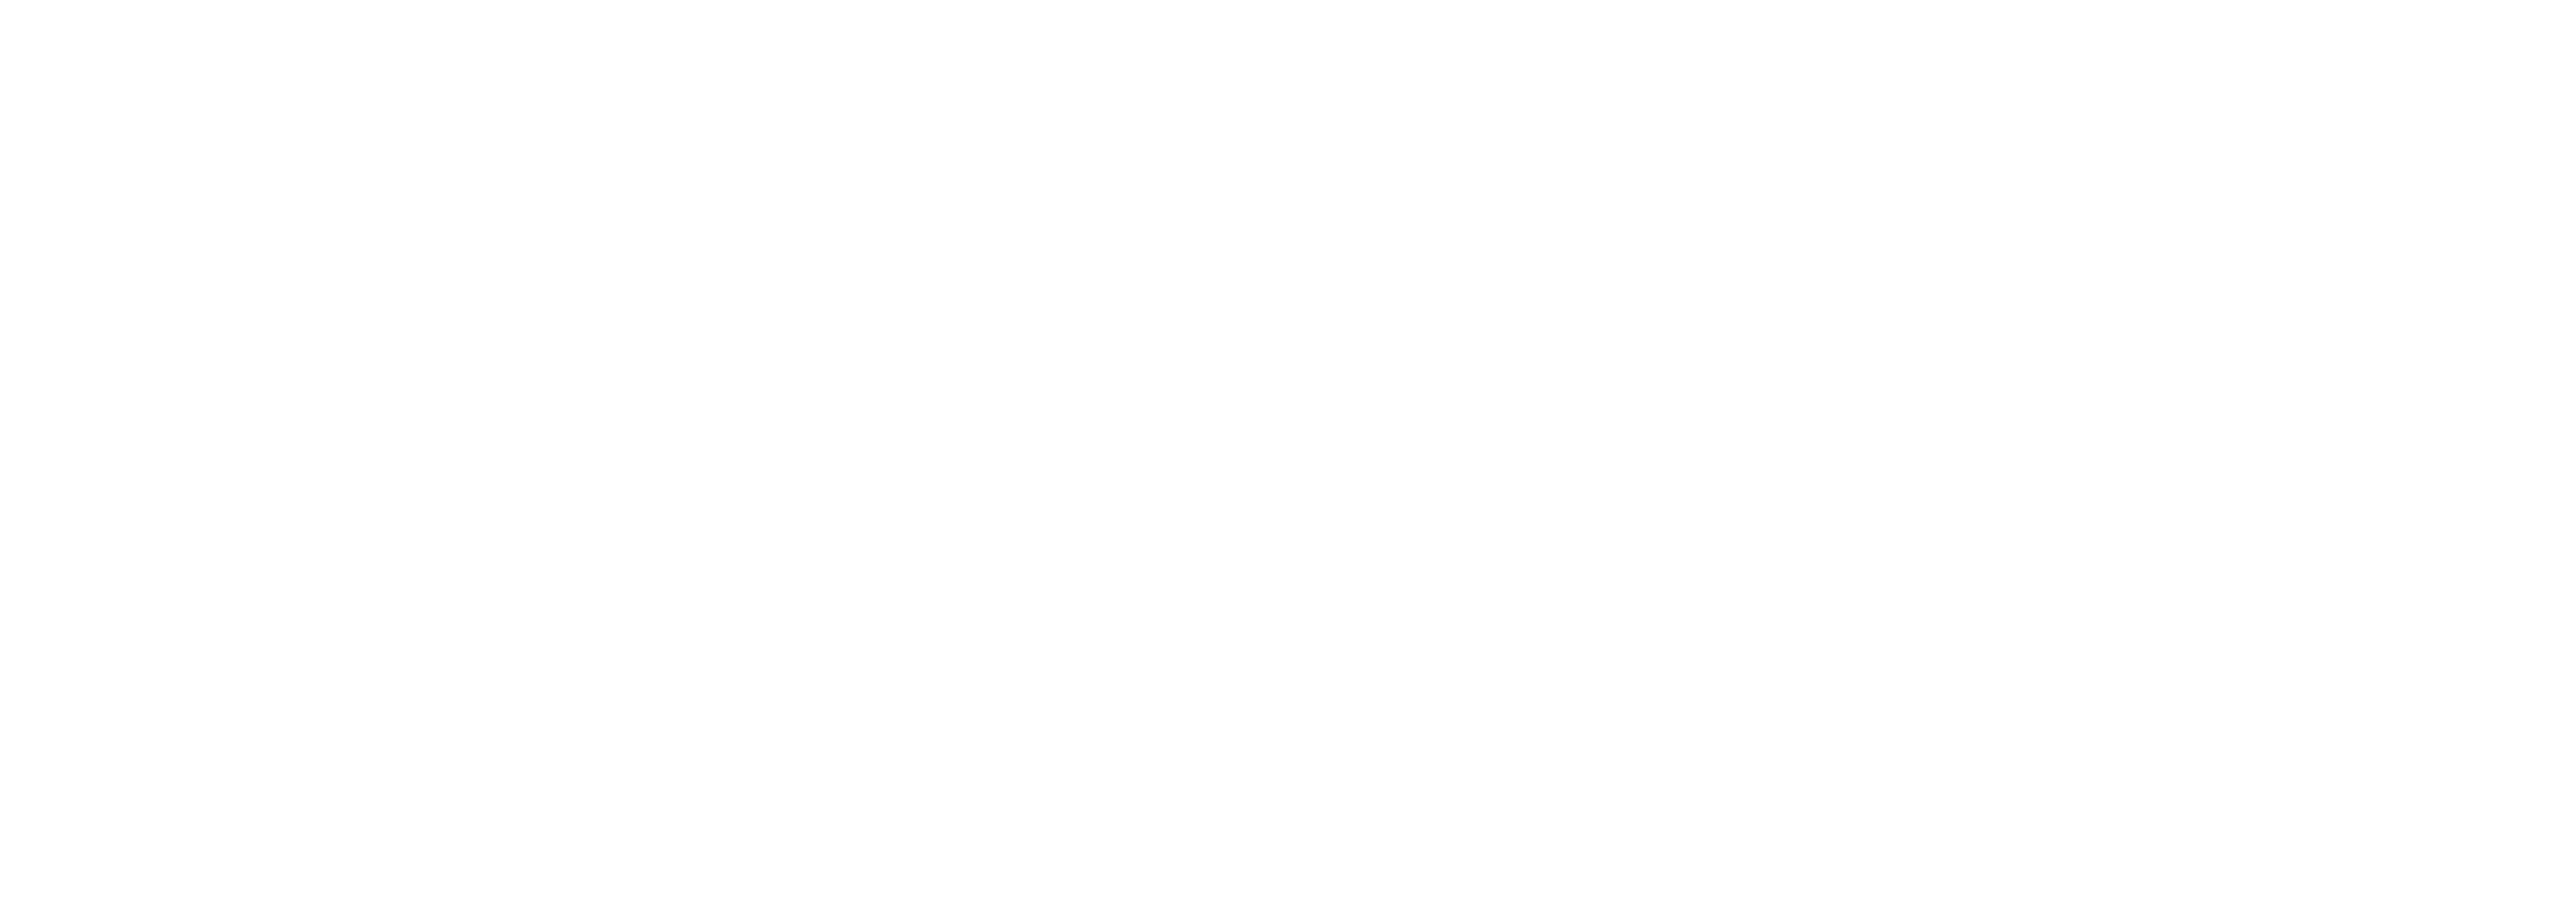 Yorwaste_Logo